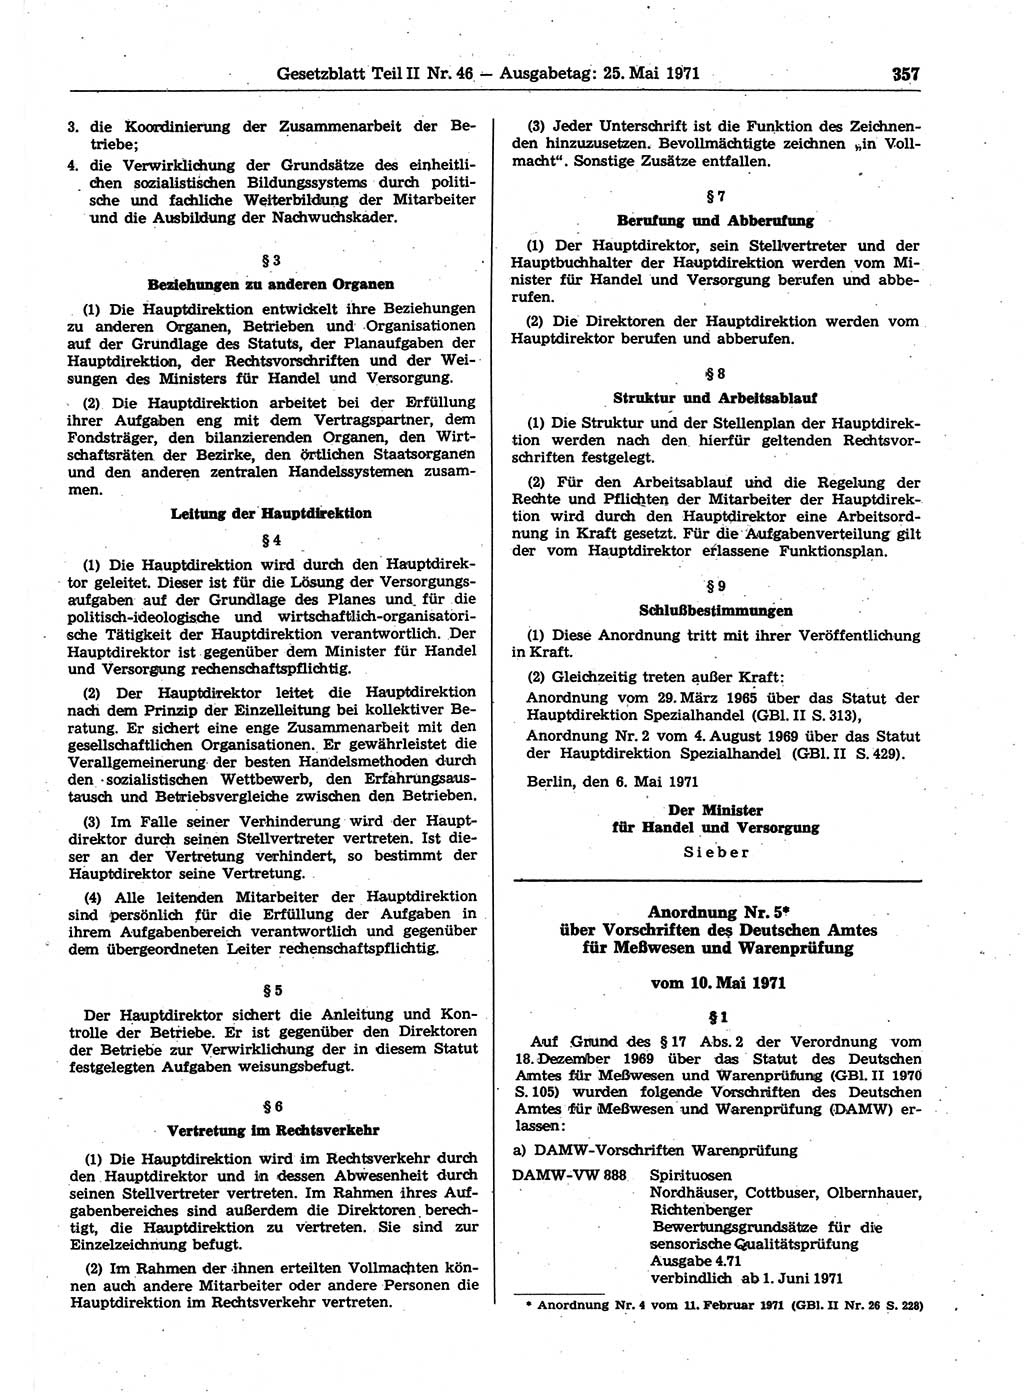 Gesetzblatt (GBl.) der Deutschen Demokratischen Republik (DDR) Teil ⅠⅠ 1971, Seite 357 (GBl. DDR ⅠⅠ 1971, S. 357)